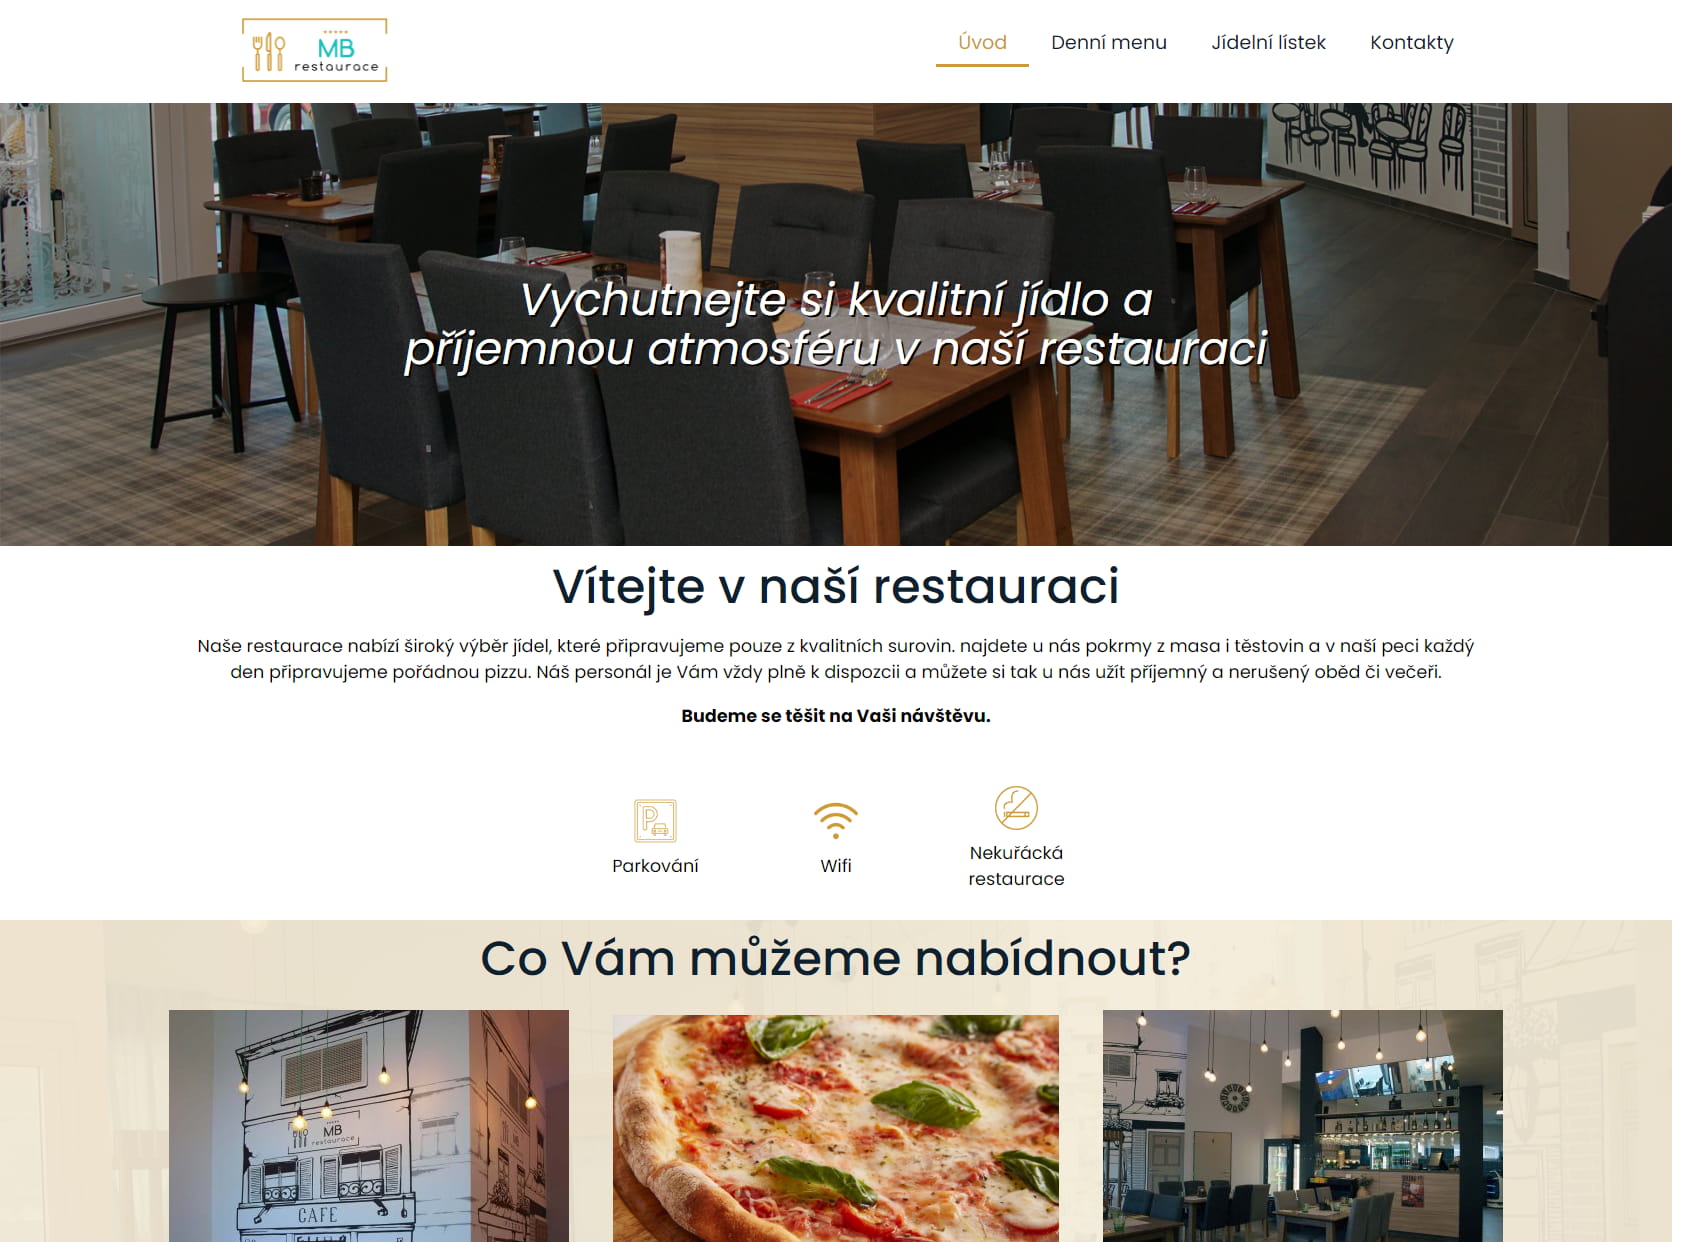 MB restaurace.cz - Ostrava